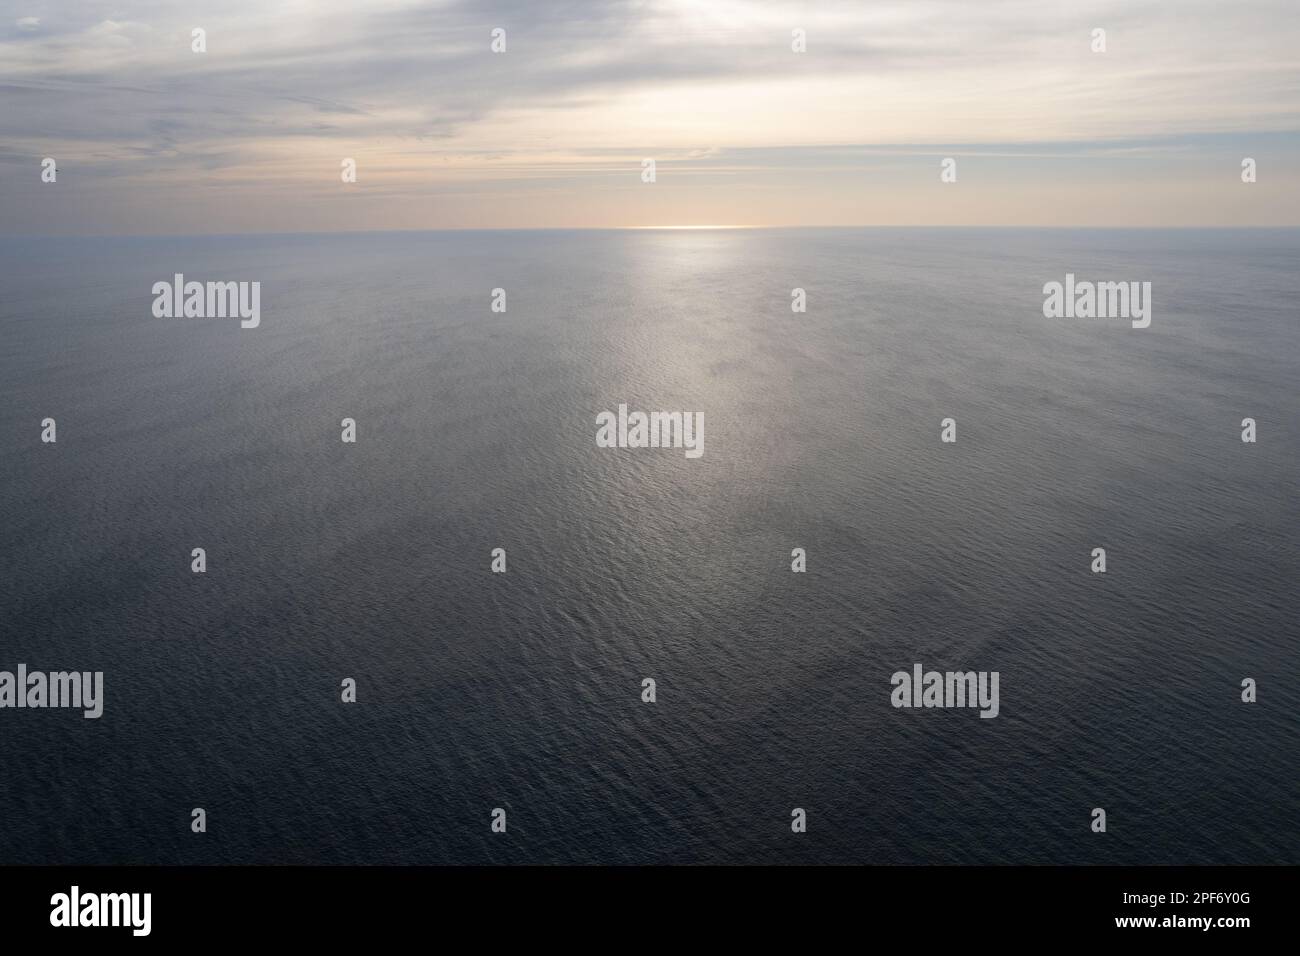 Puesta de sol sobre el mar tranquilo paisaje marino vista aérea drone Foto de stock